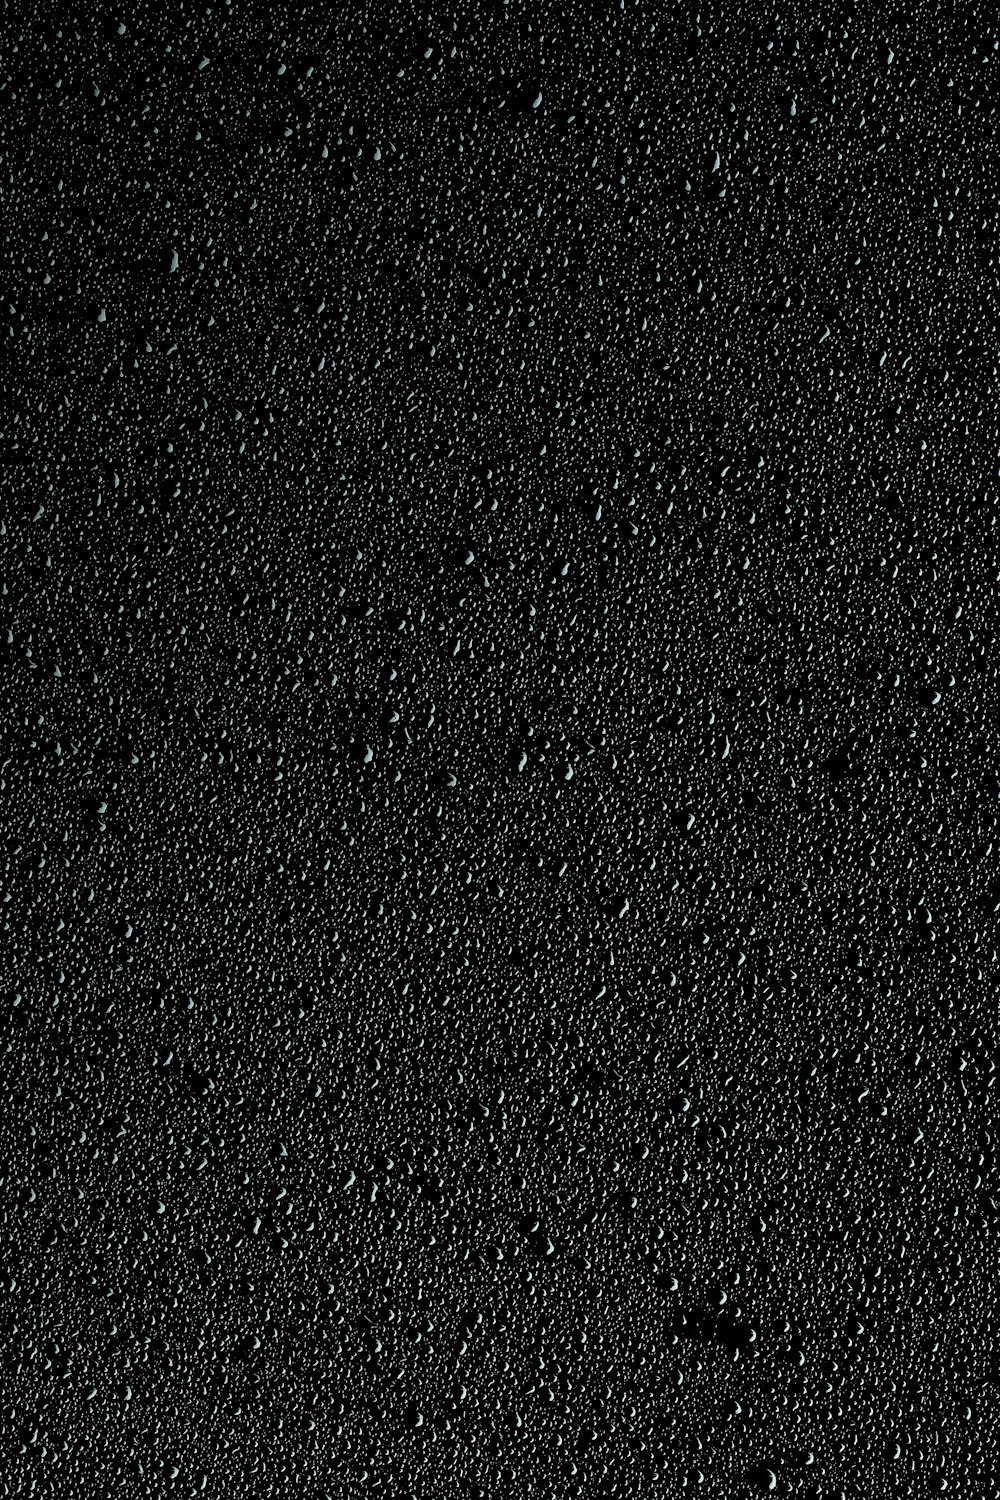 ein schwarzer Hintergrund mit kleinen Wasserblasen